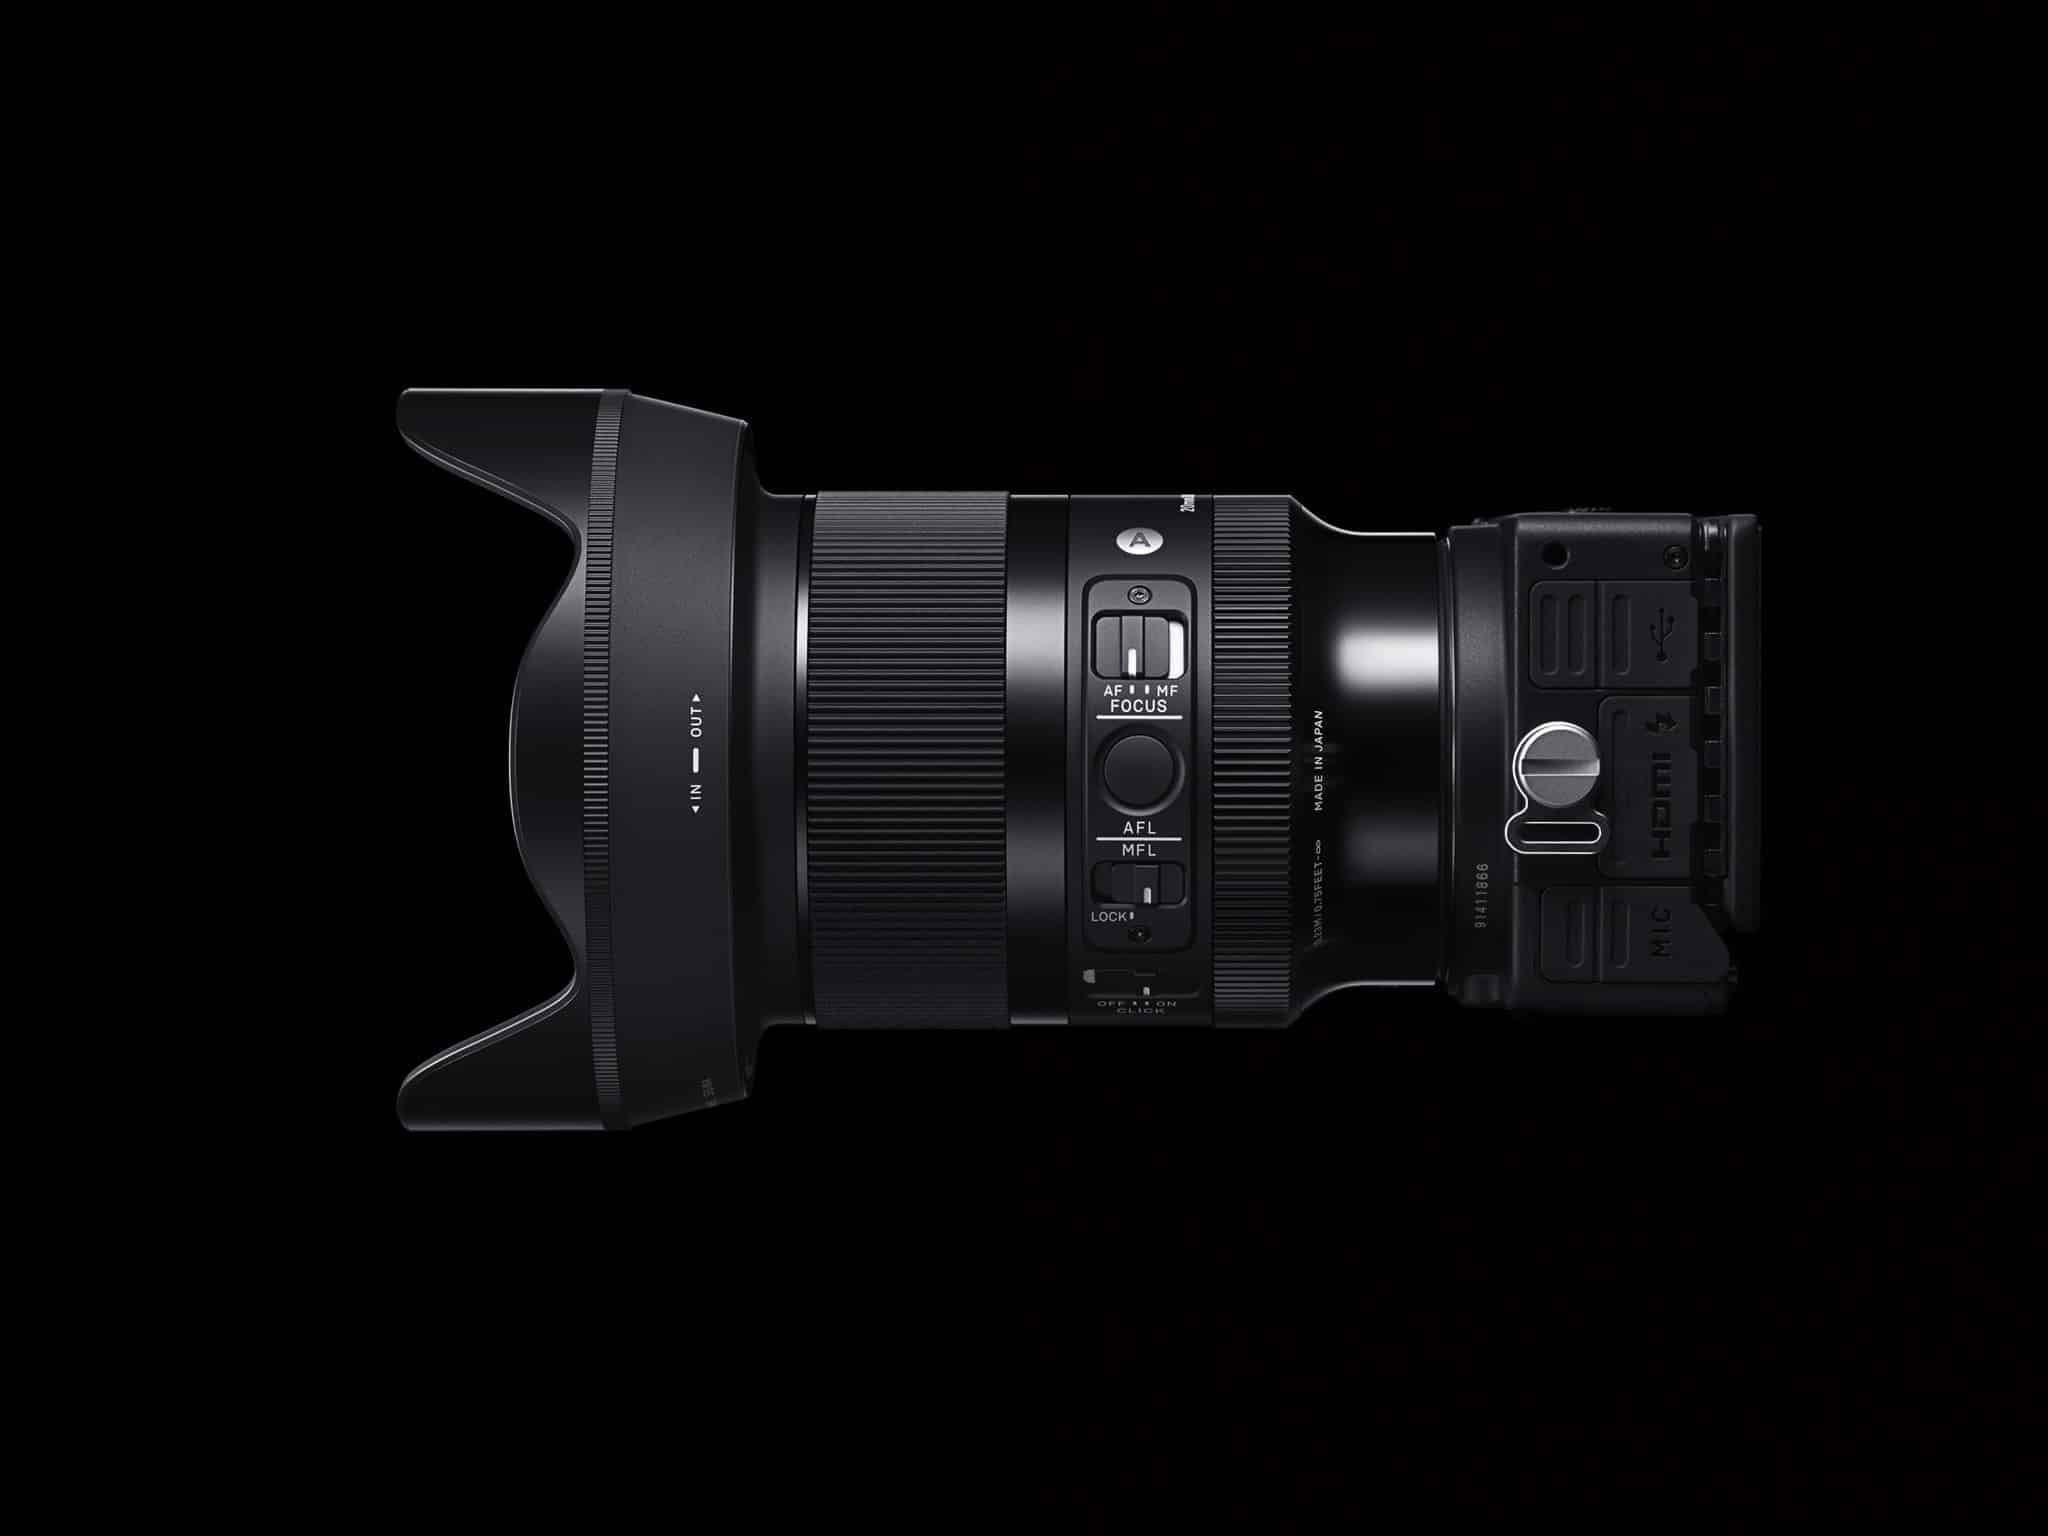 Ống kính Sigma 20mm F1.4 DG DN Art cho Sony E